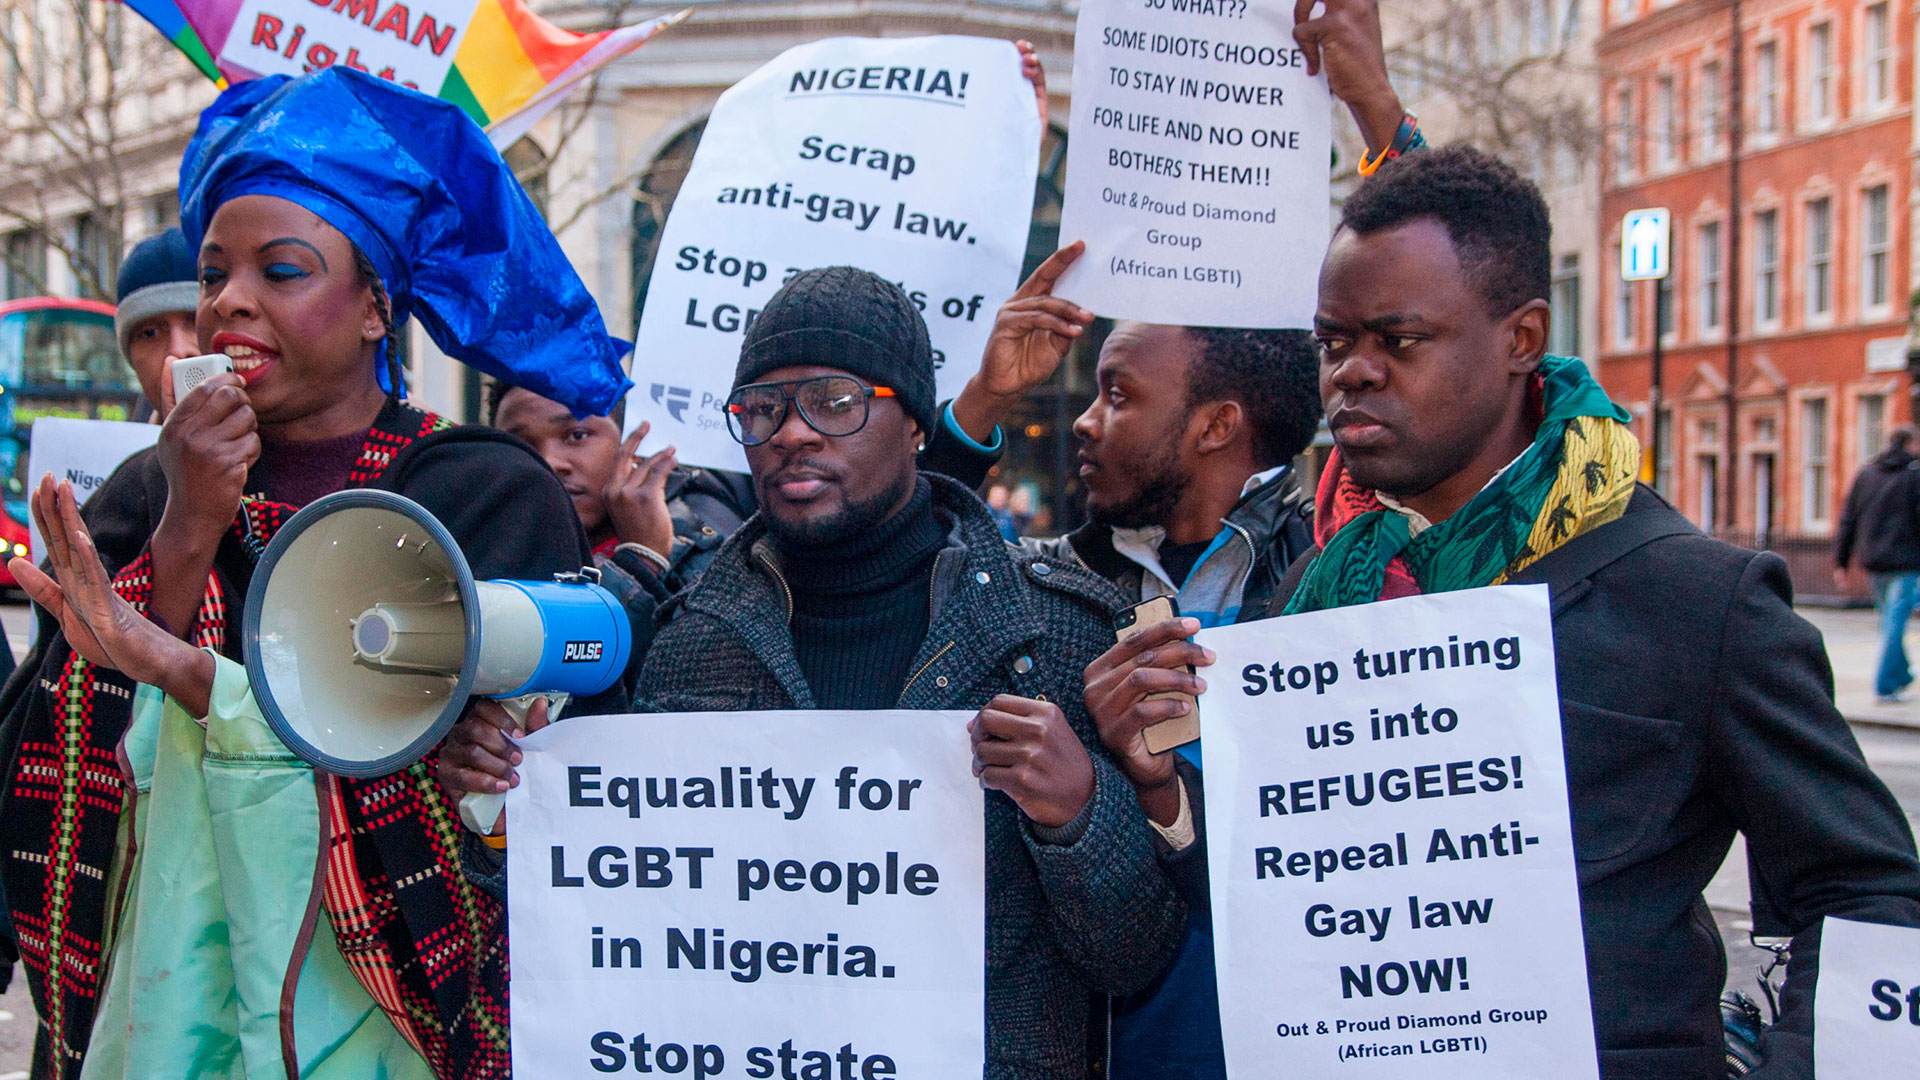 Tres hombres fueron condenados a muerte en Nigeria por ser homosexuales: los van a lapidar